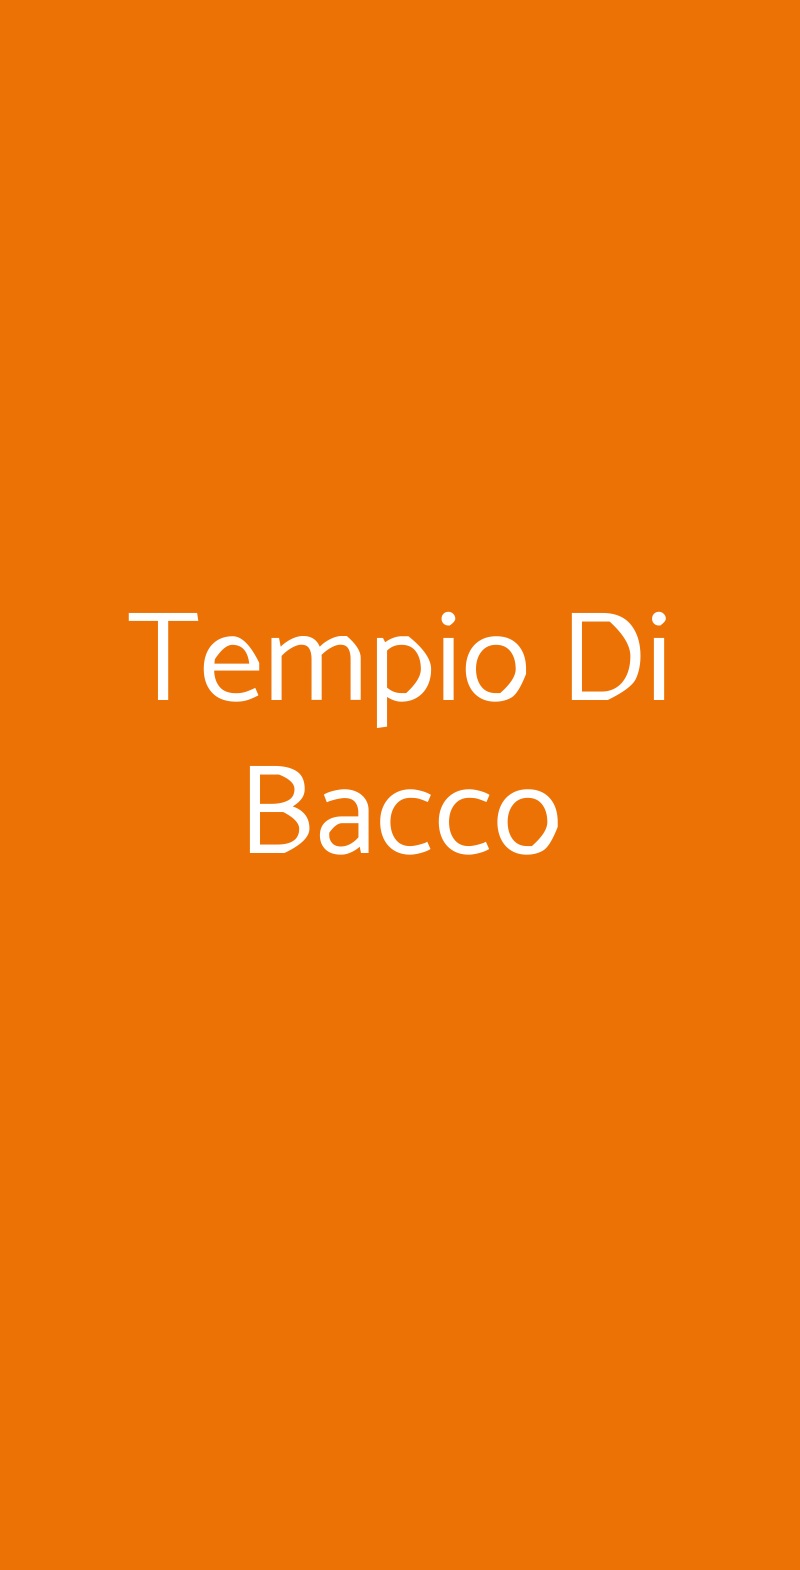 Tempio Di Bacco Milano menù 1 pagina